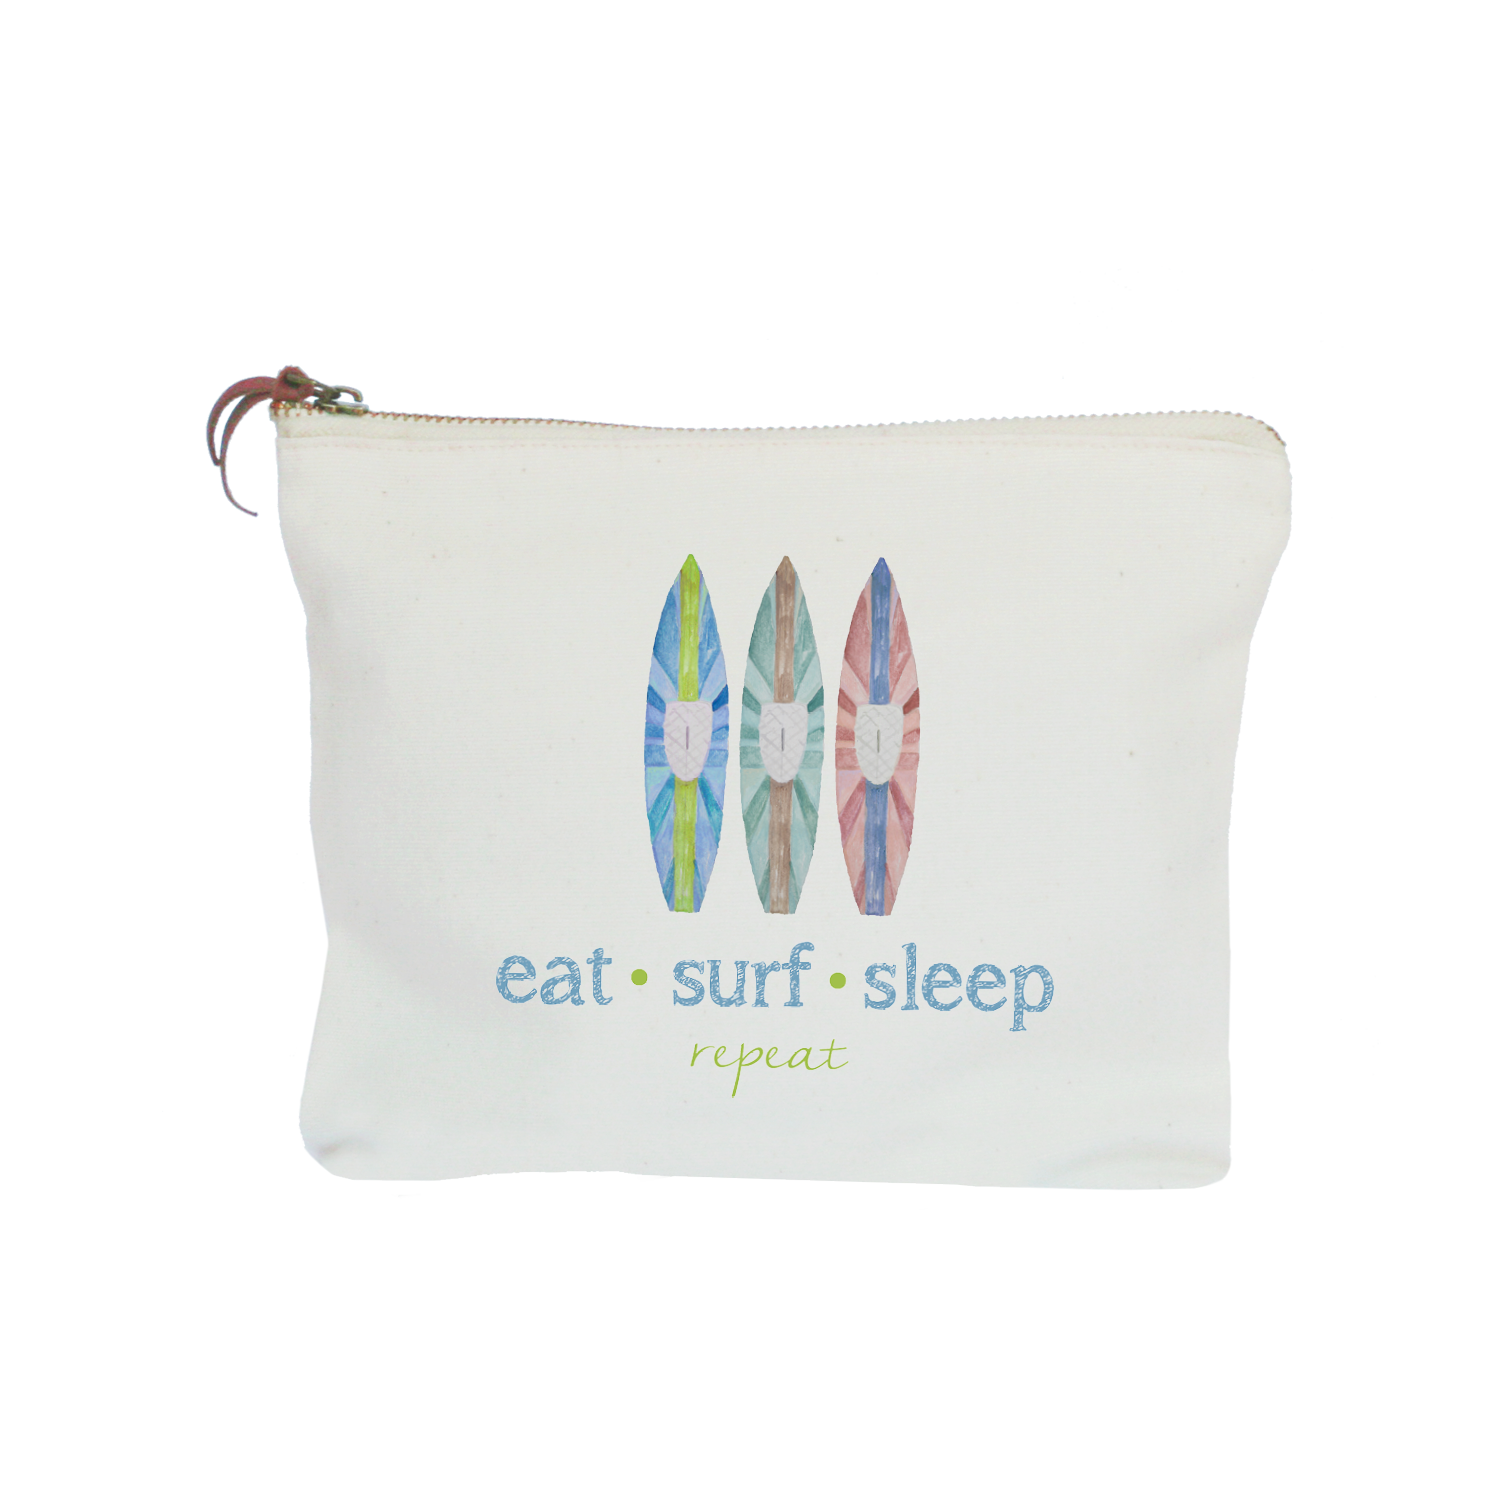 eat surf sleep repeat zipper pouch